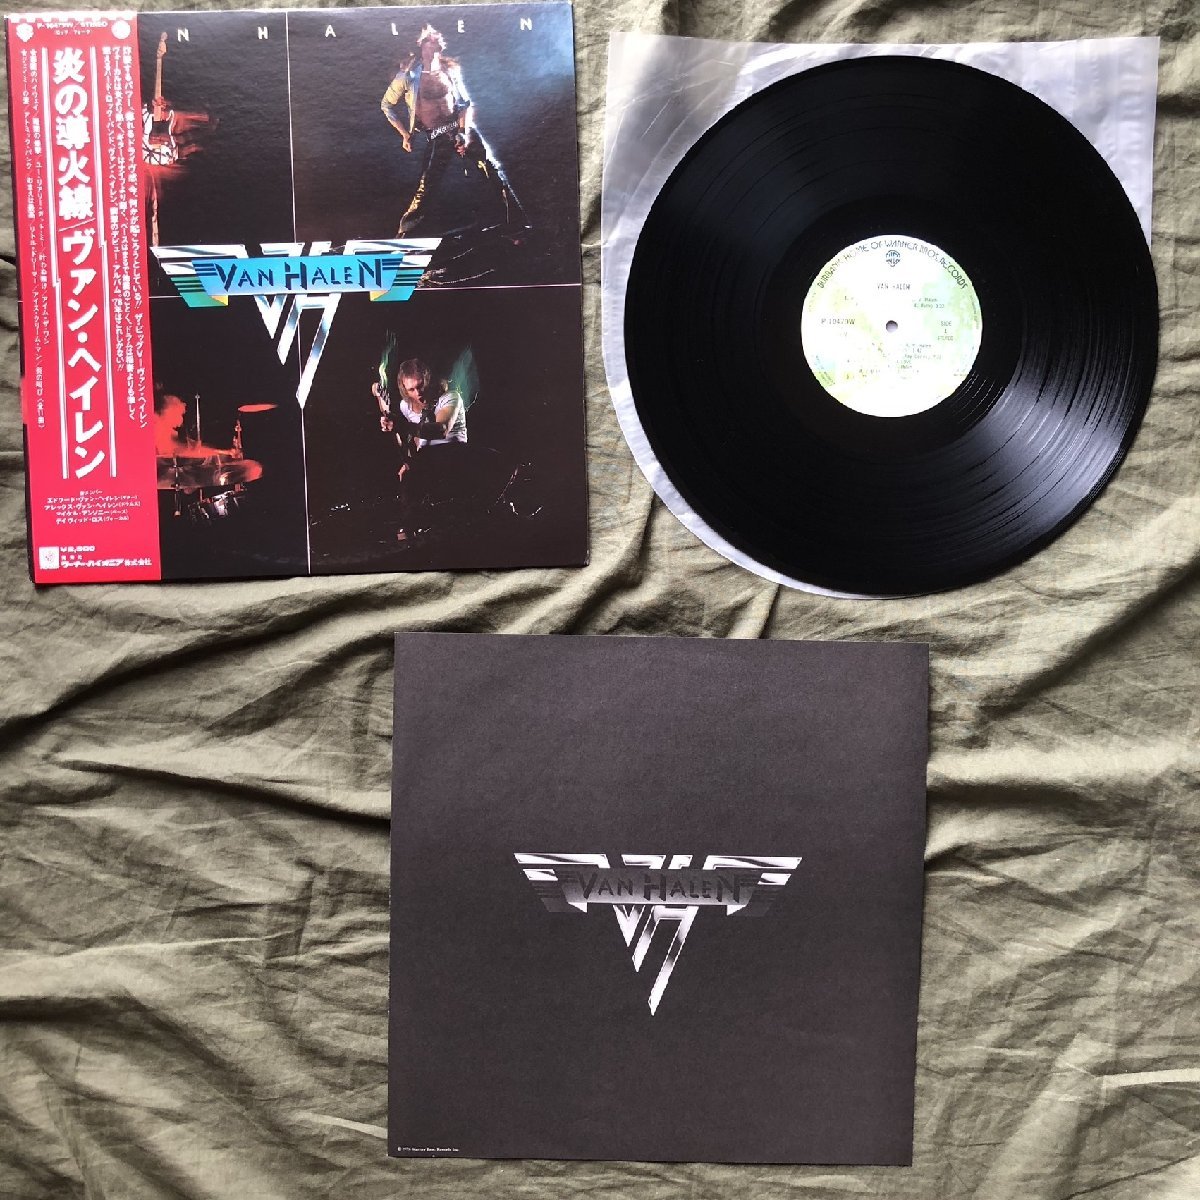 傷なし美盤 良ジャケ 美品 1978年 国内初盤 ヴァン・ヘイレン Van Halen LPレコード 炎の導火線 Van Halen 帯付 David Lee Roth,_画像5